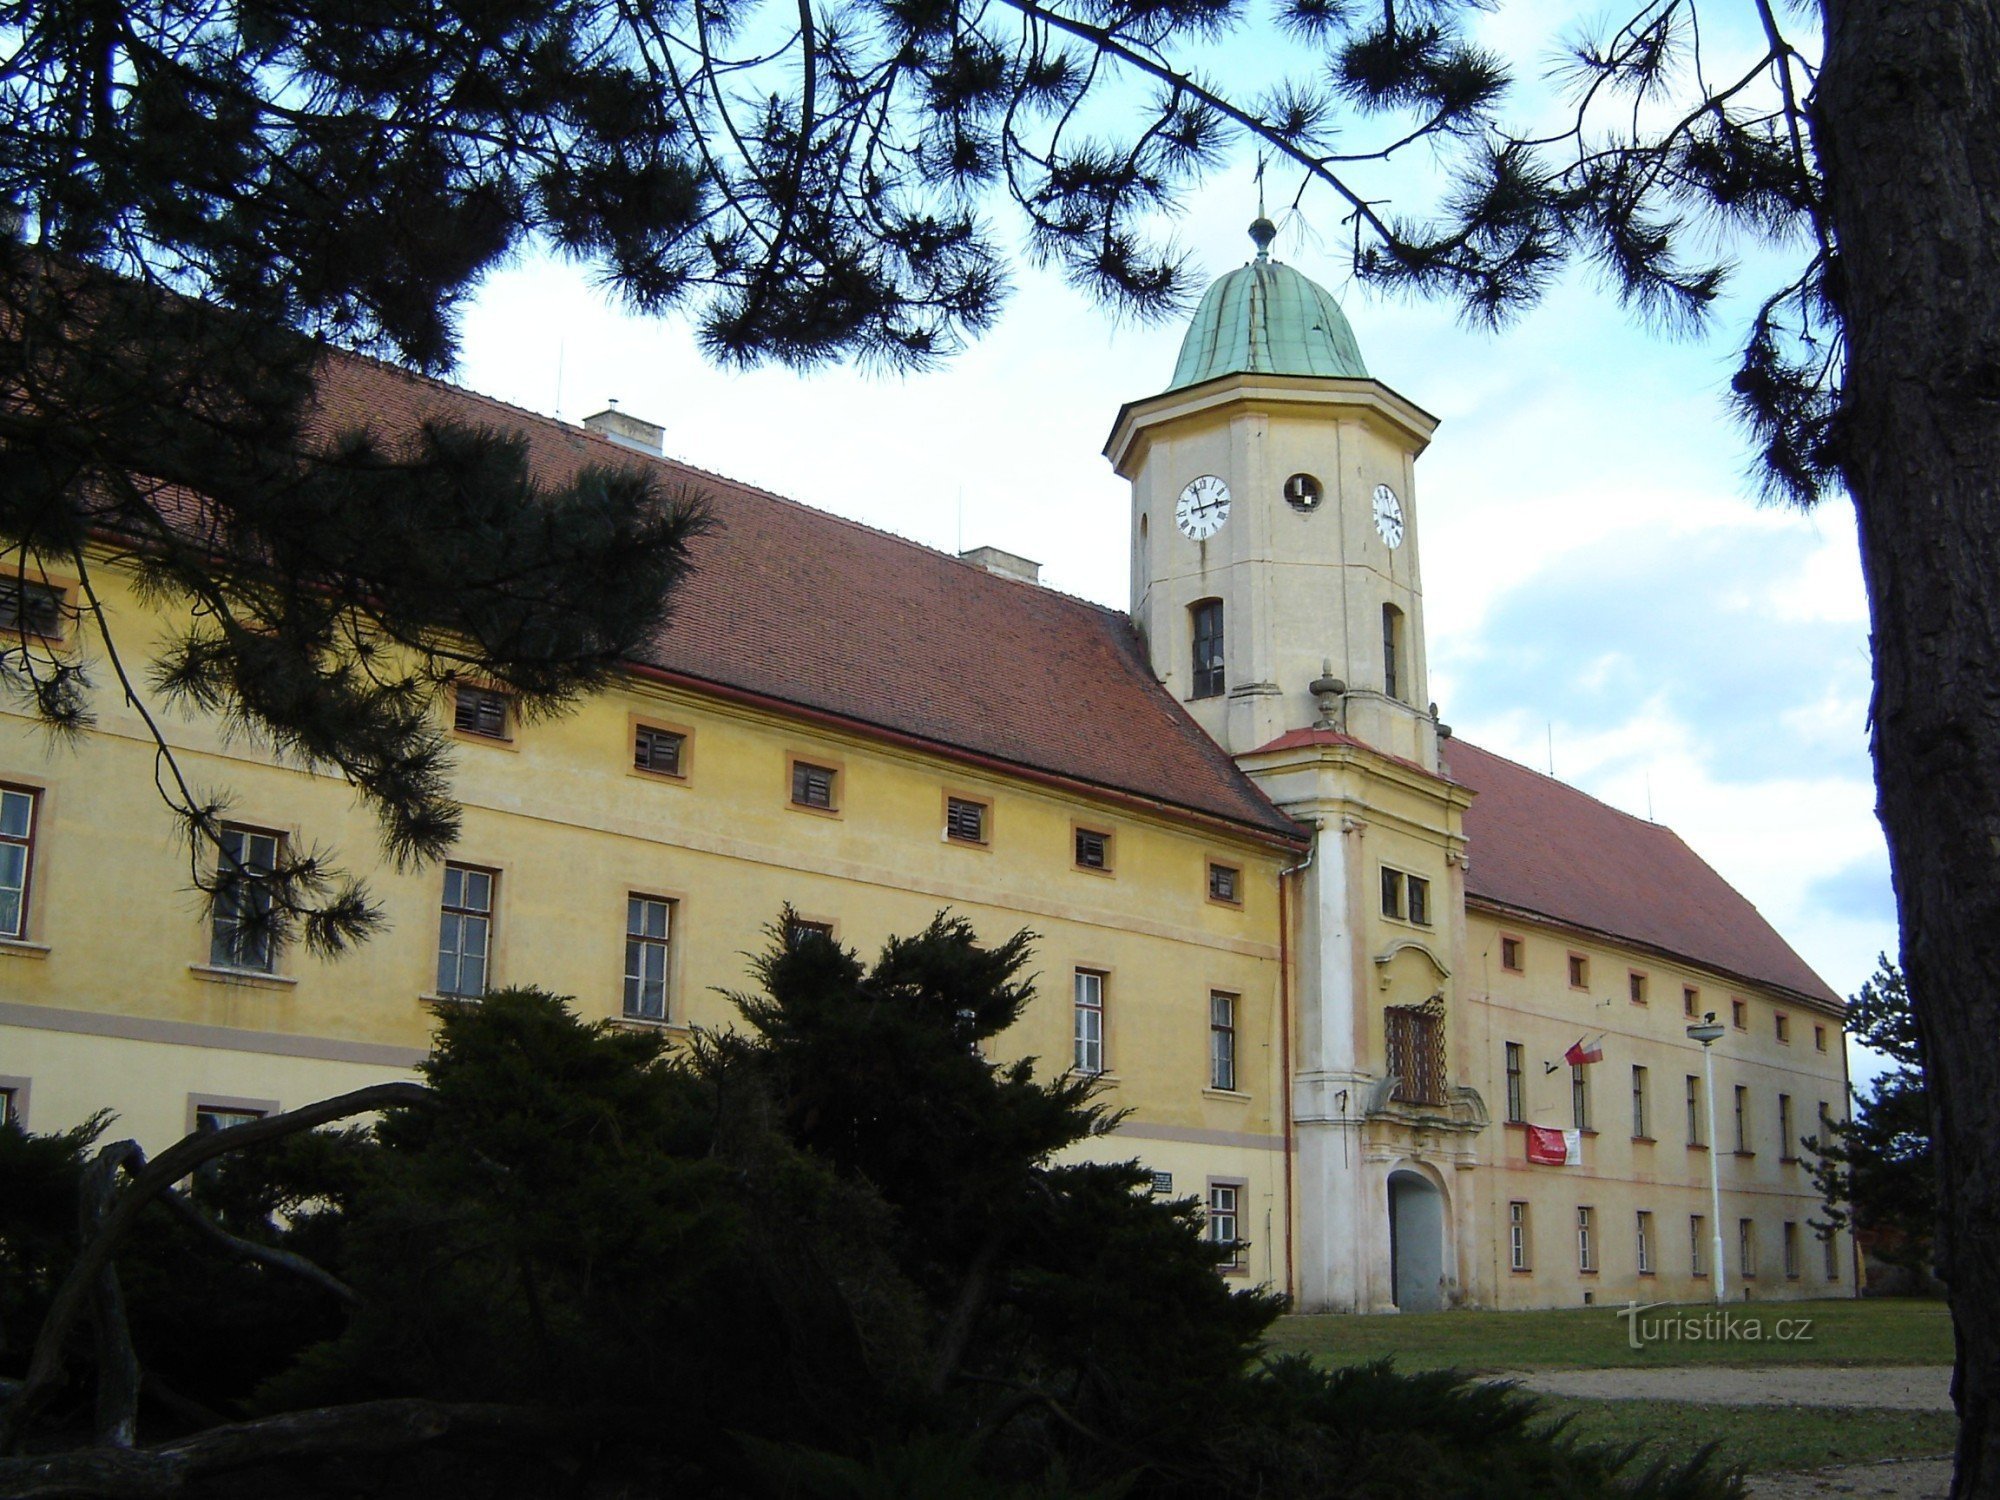 Mořice - Castelo de Paulánů